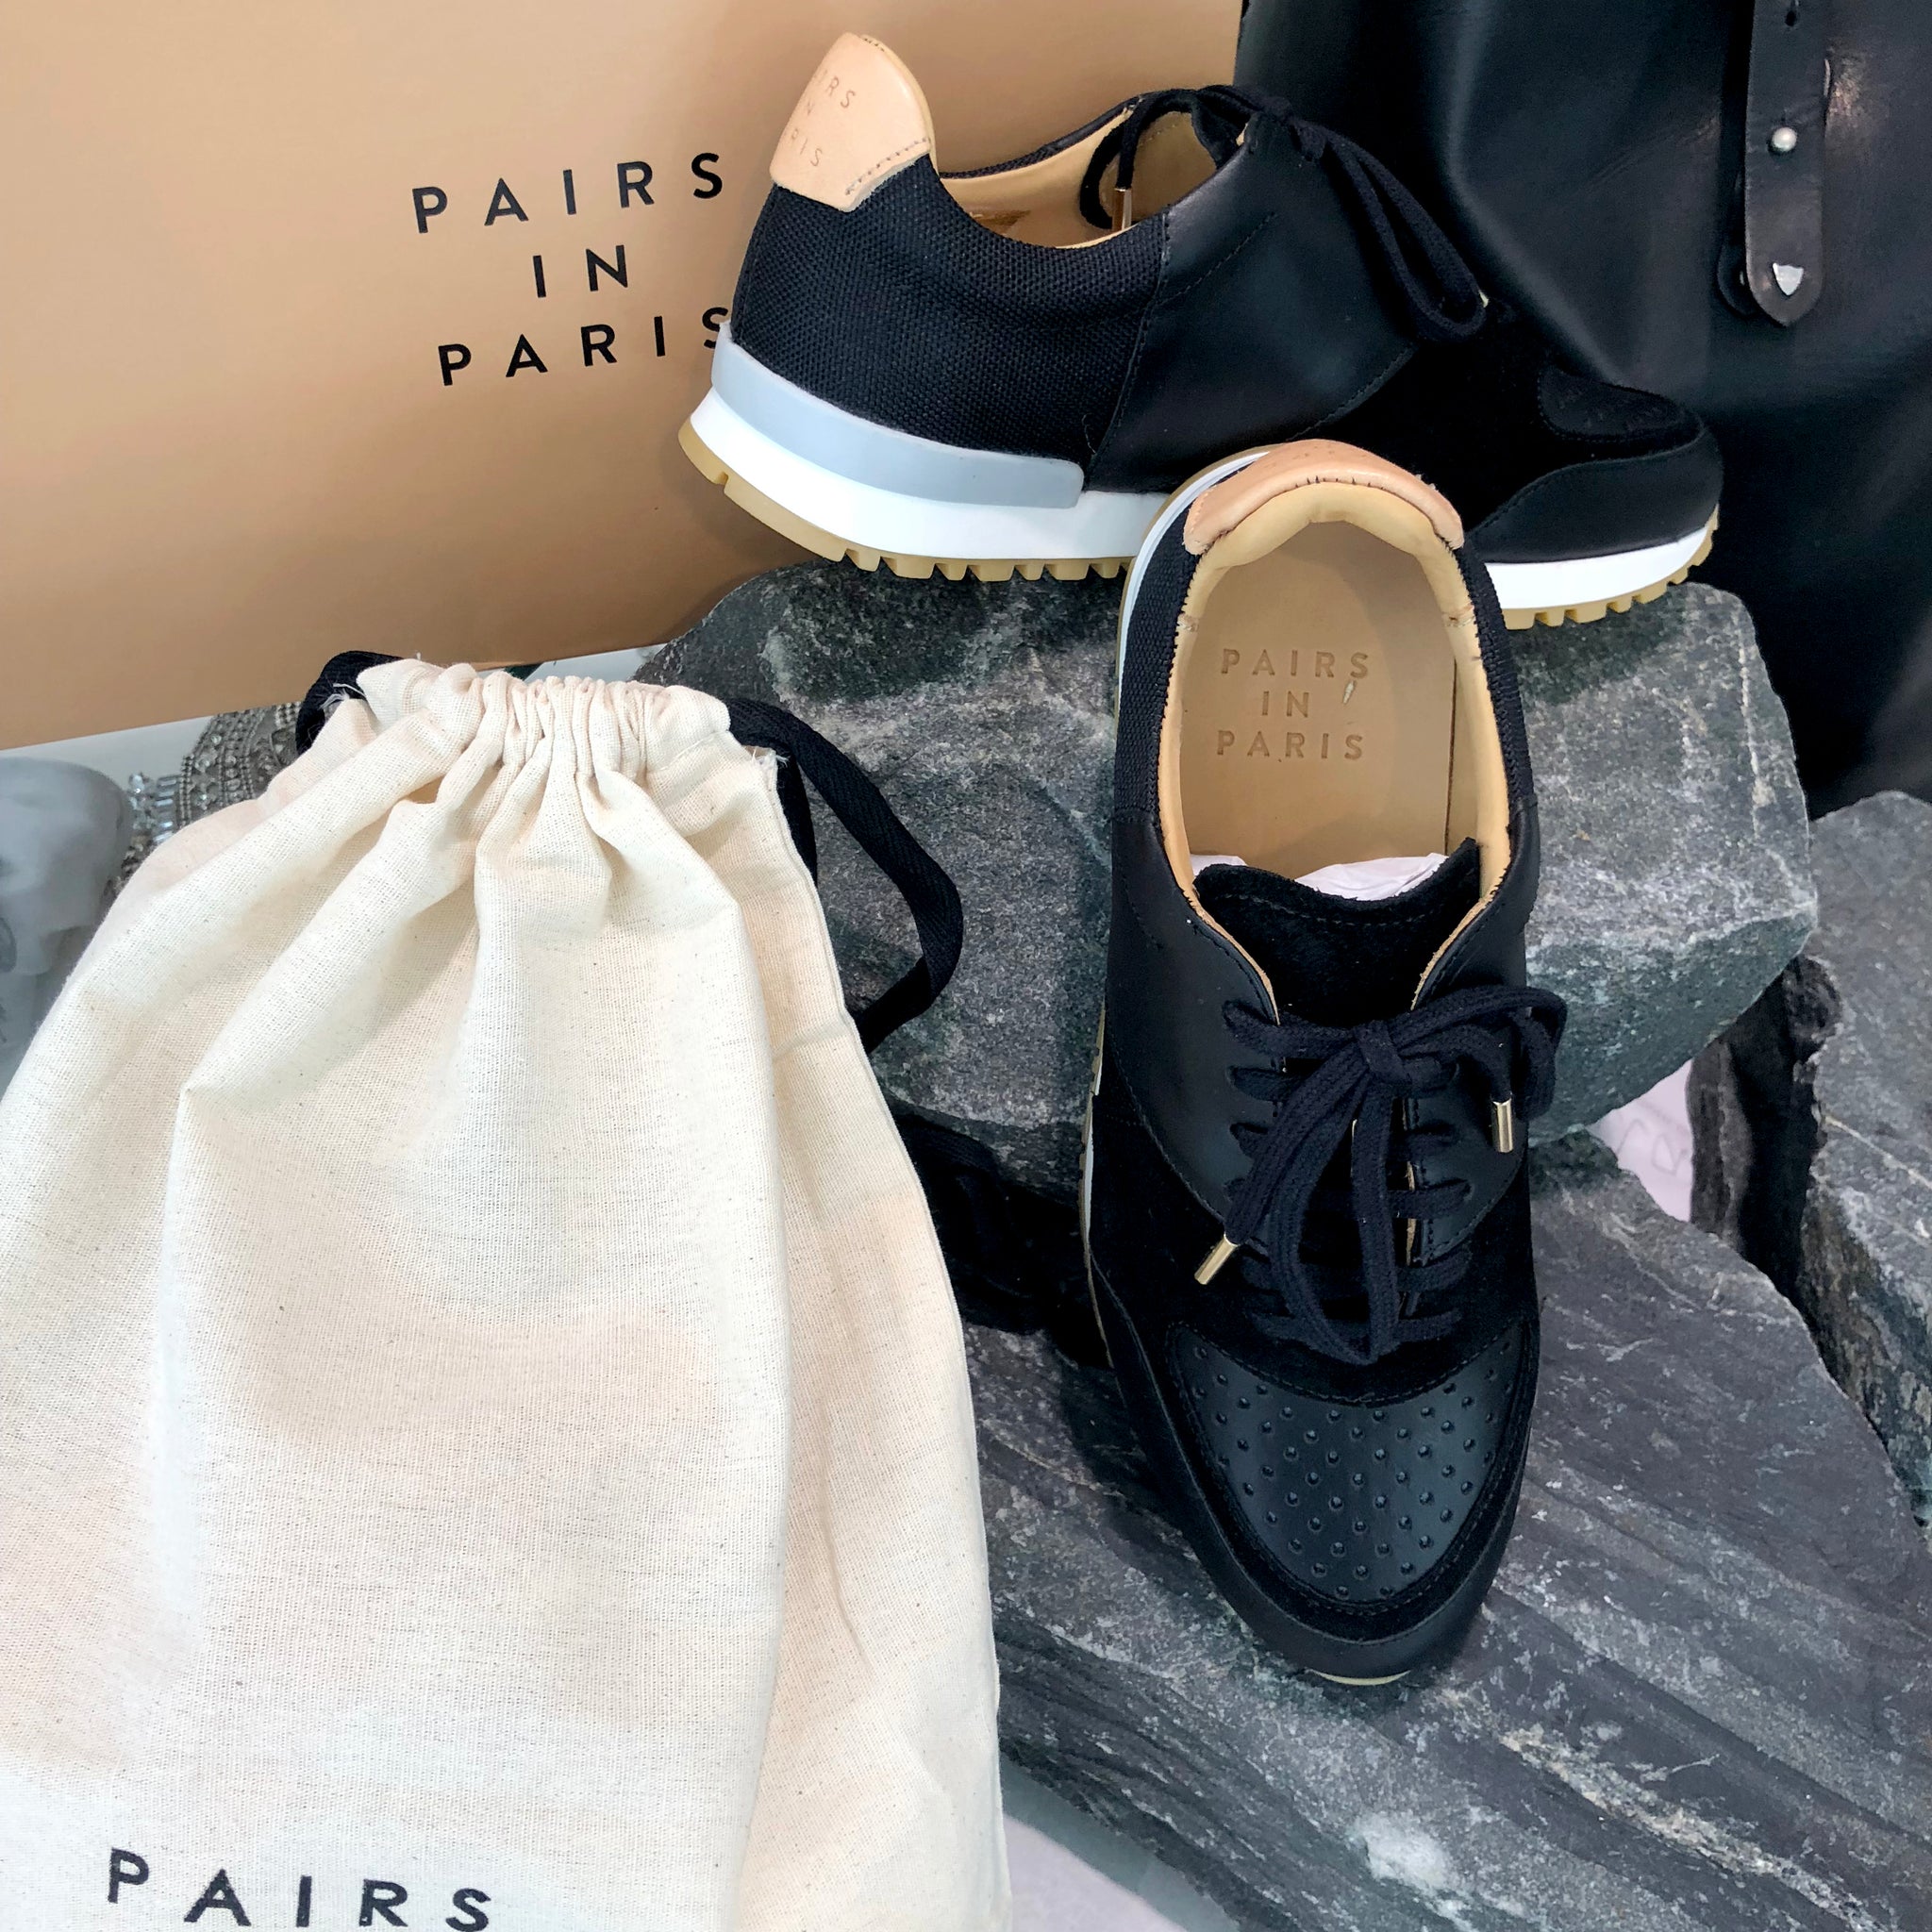 Pairs in Paris Shoes